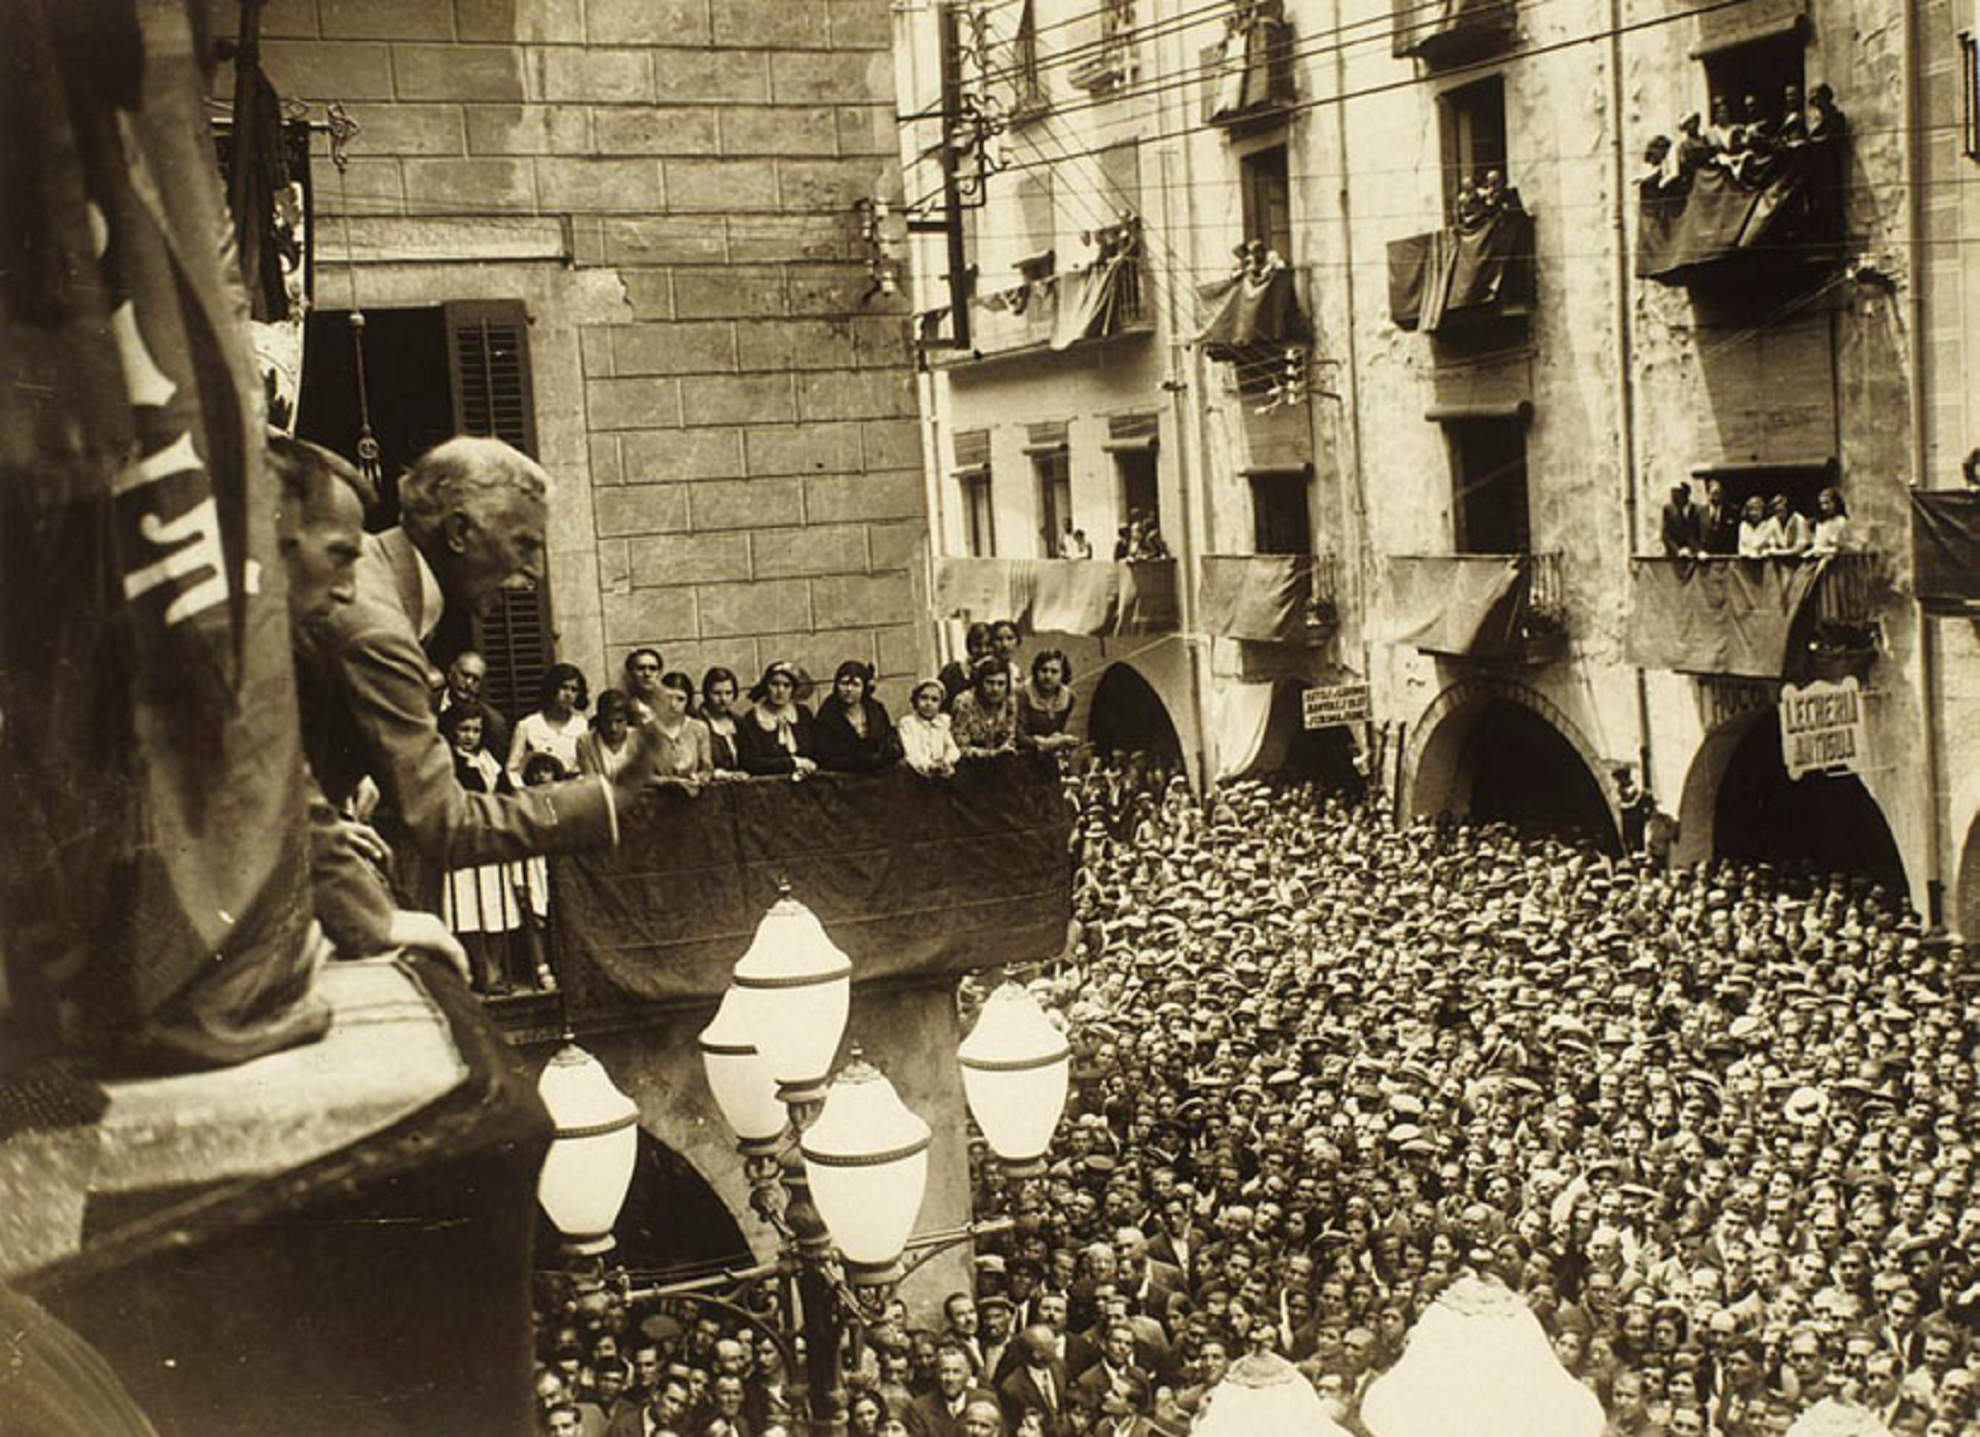 Neix Francesc Macià, la figura política més destacada del segle XX català